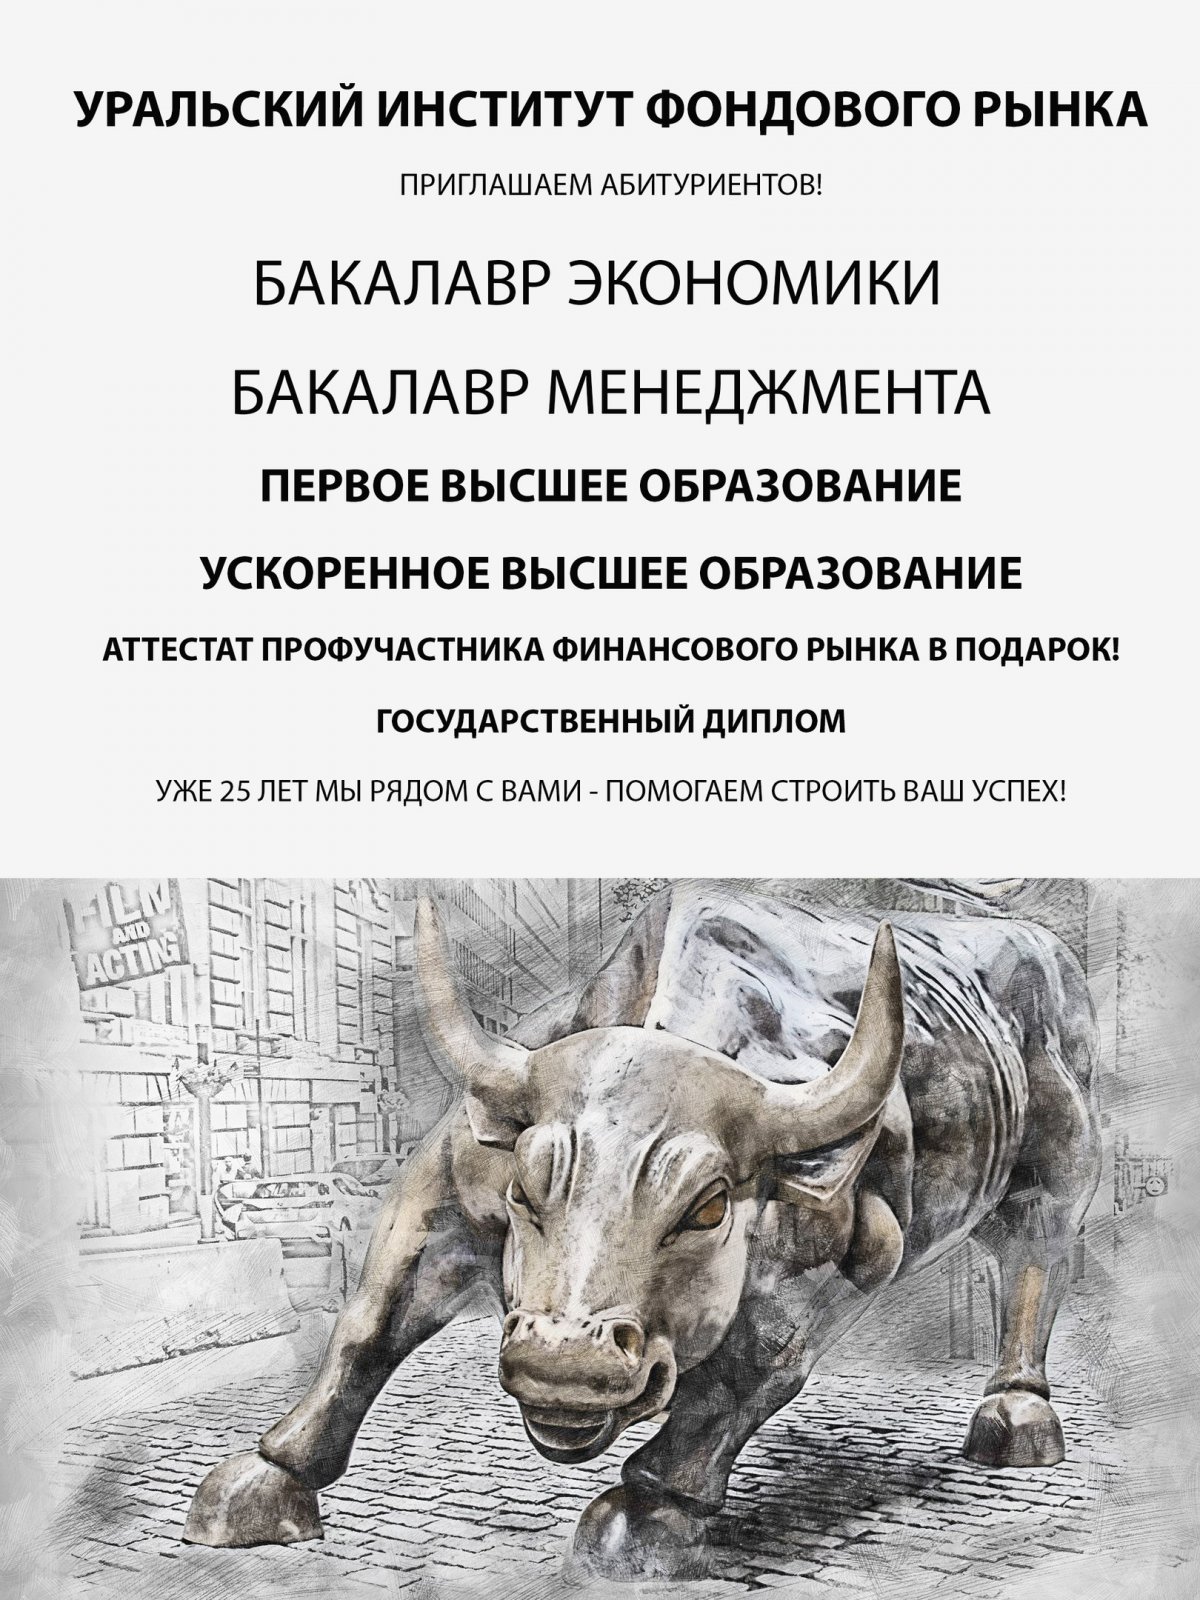 Уральский институт фондового рынка продолжает прием абитуриентов.